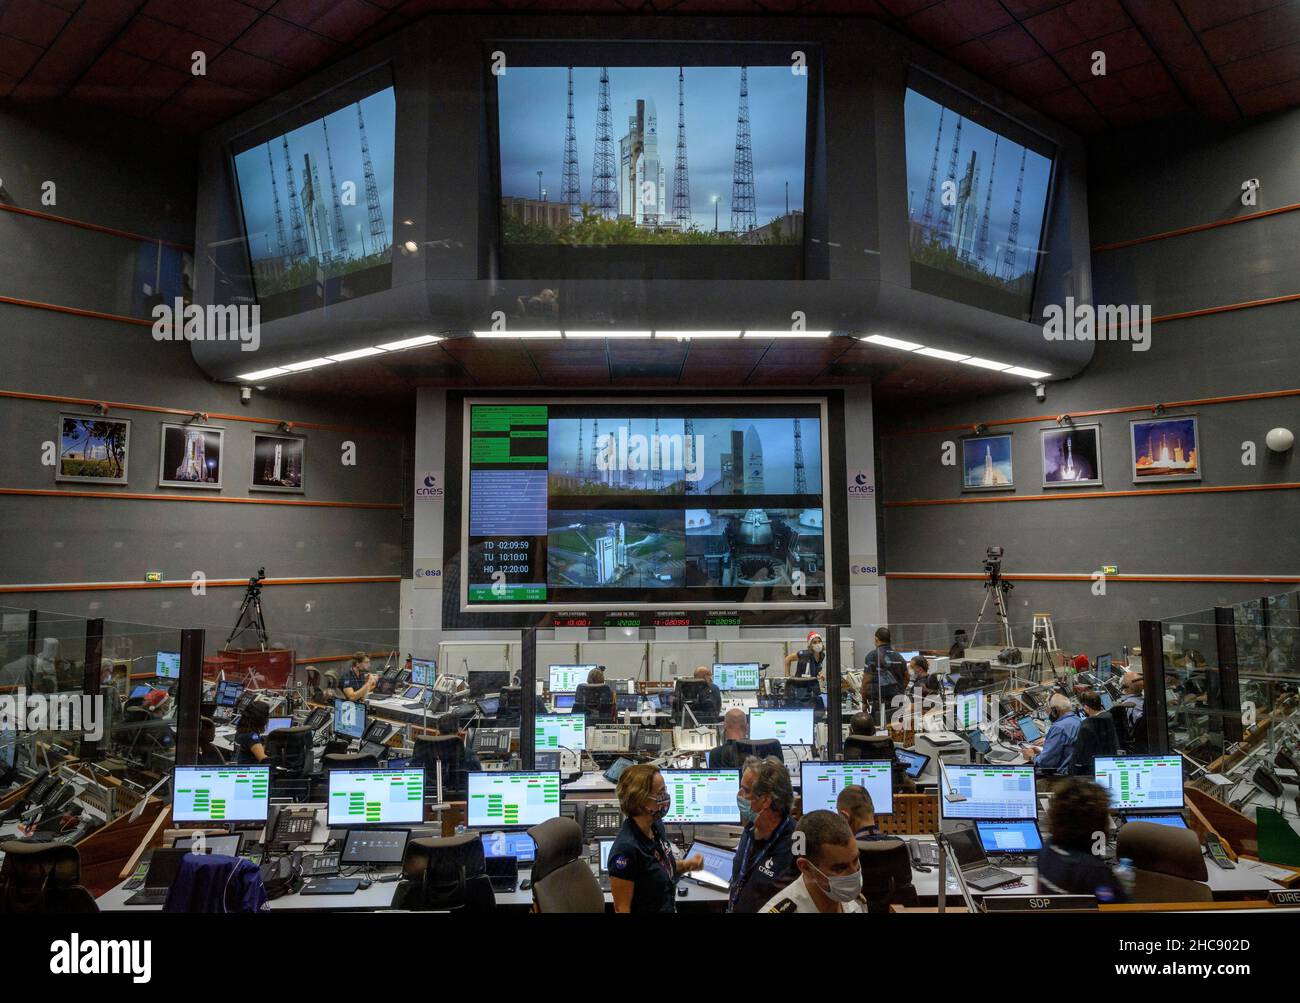 Kourou, Französisch-Guayana. 25. Dezember 2021. Startteams überwachen den Countdown zum Start der Arianespace Ariane 5-Rakete mit dem NASA-James Webb-Weltraumteleskop an Bord, das am 25. Dezember 2021 im Weltraumzentrum Guayana in Kourou, Französisch-Guayana, Missionskontrolle durchführt. Quelle: Bill Ingalls/NASA/Alamy Live News Stockfoto